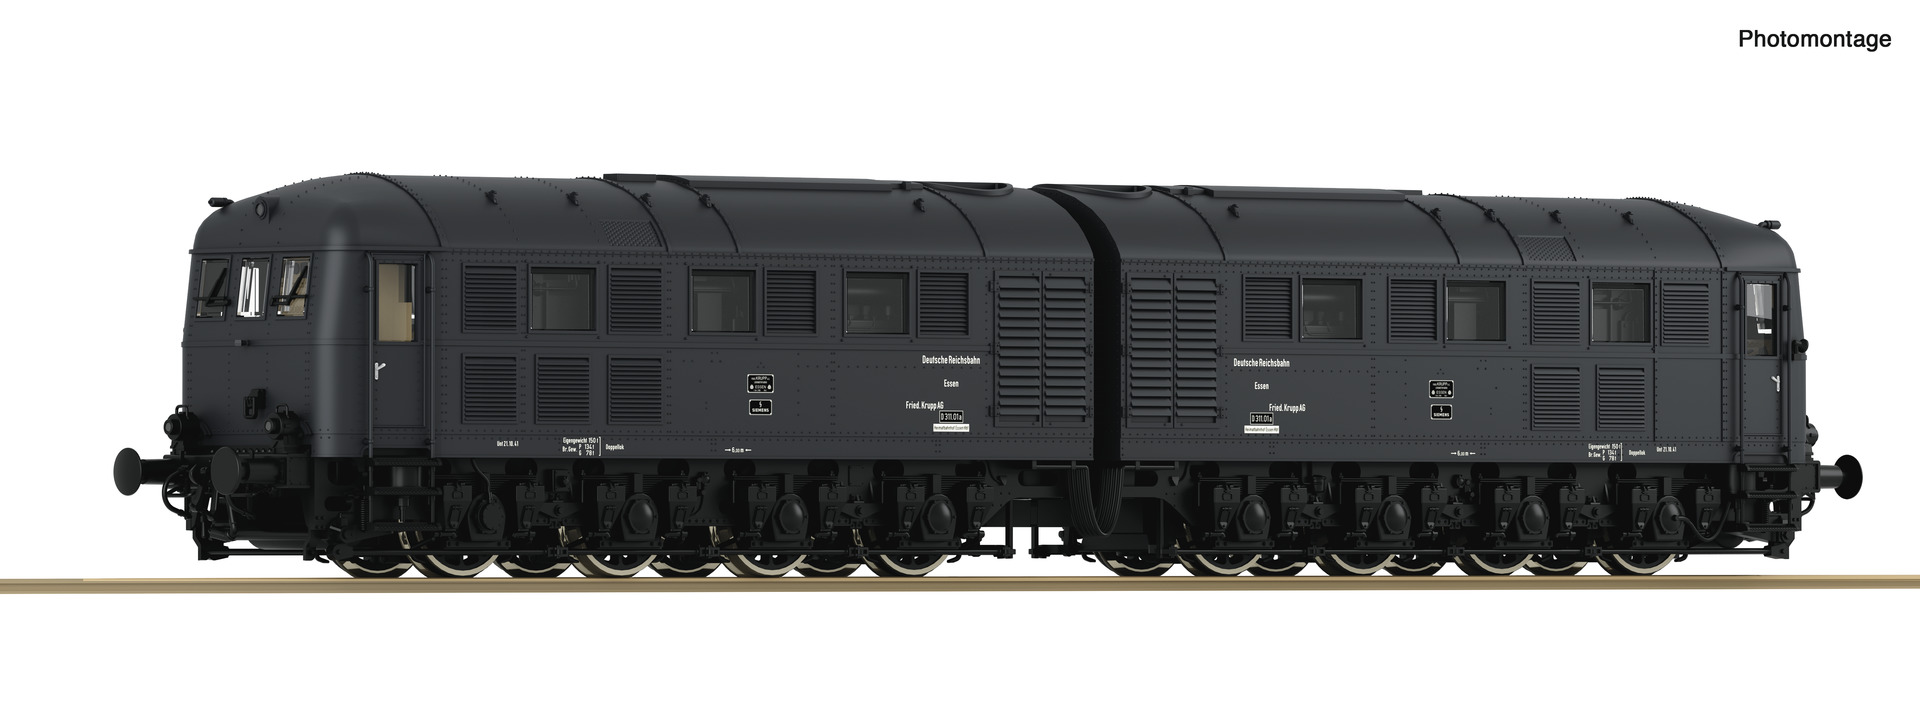 ROCO 70114 Dieselelektrische Doppellokomotive D311.01, DWM DCC Sound Spur H0